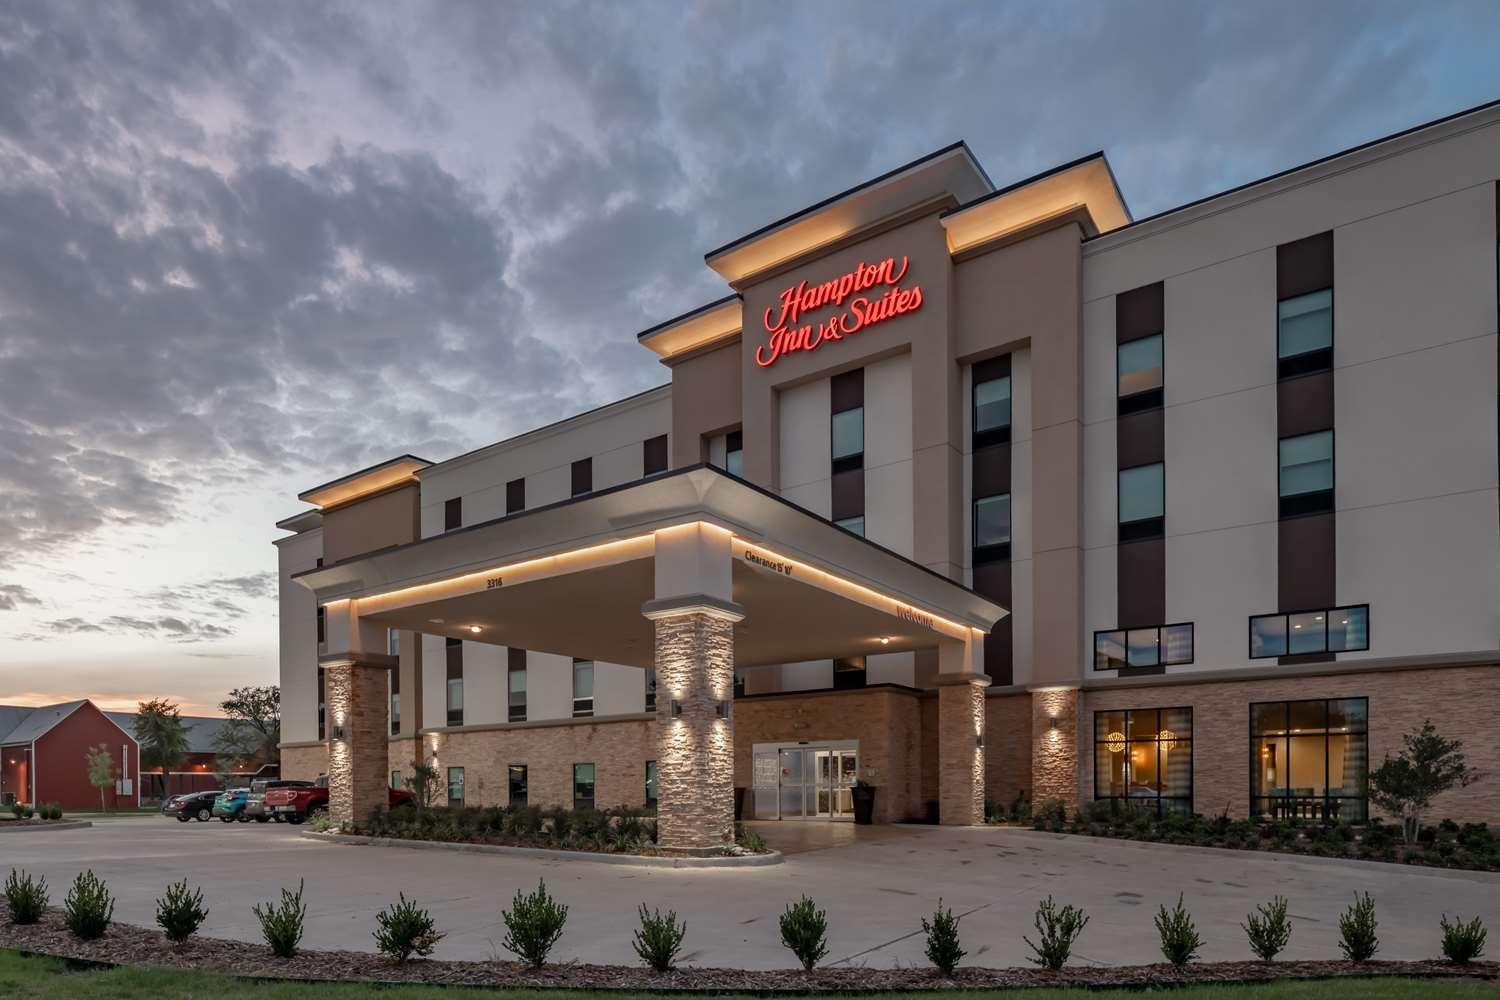 Hampton Inn & Suites Dallas/Plano Central in Plano, TX